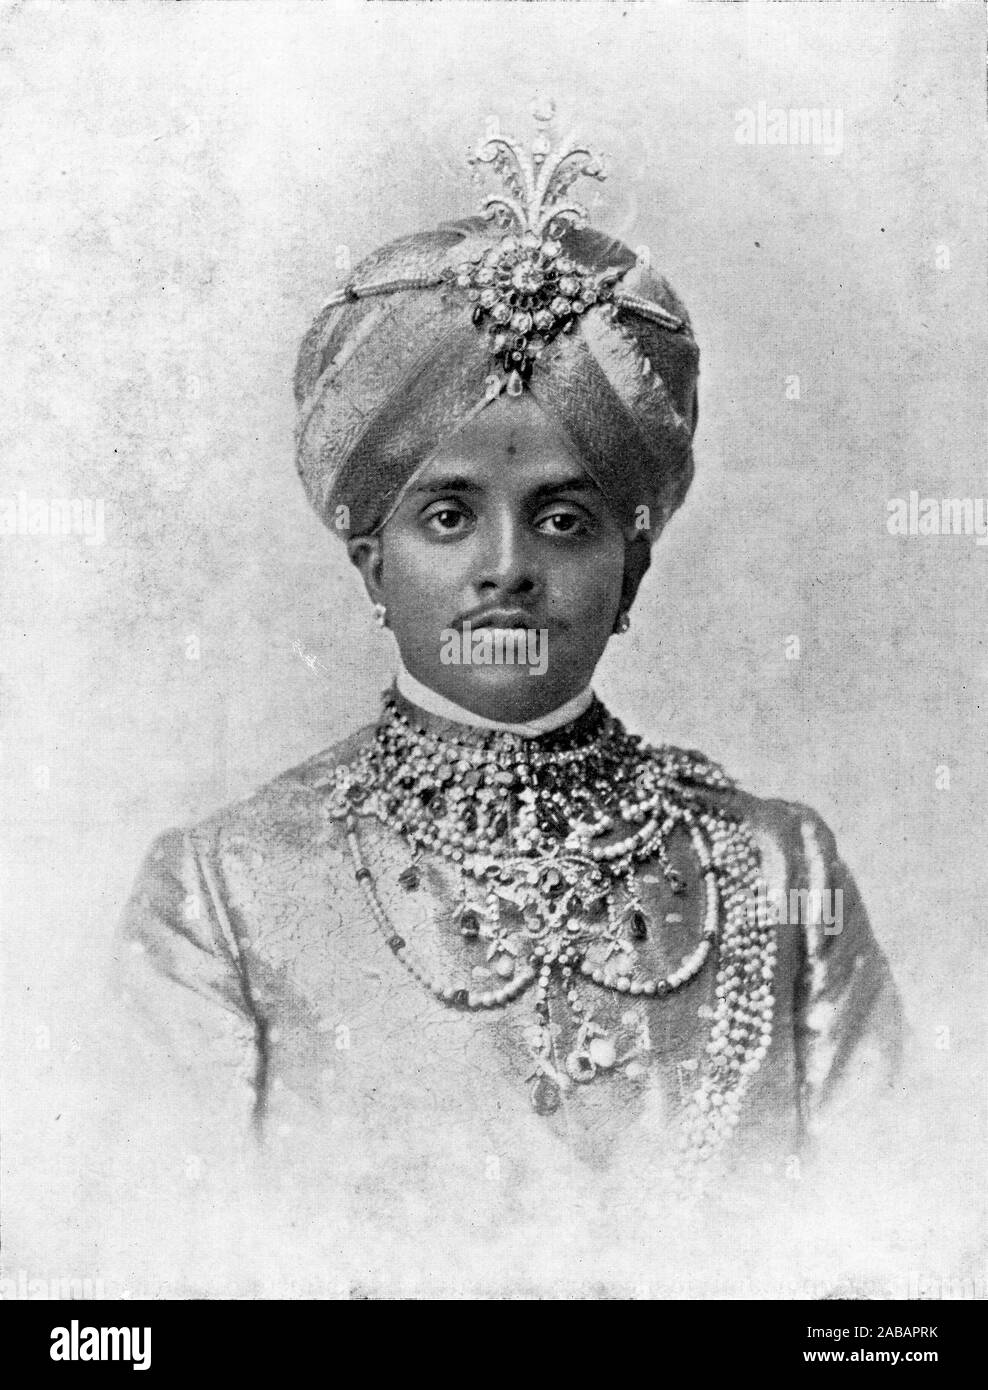 Halbton Porträt Seiner Hoheit, Maharaja Krishnaraja Wadiyar IV (Nalwadi Krishnaraja Wadiyar; 1884-1940) 24 Maharaja von Mysore, von 1894 bis 1940. Zum Zeitpunkt seines Todes, war er einer der reichsten Männer der Welt. Stockfoto